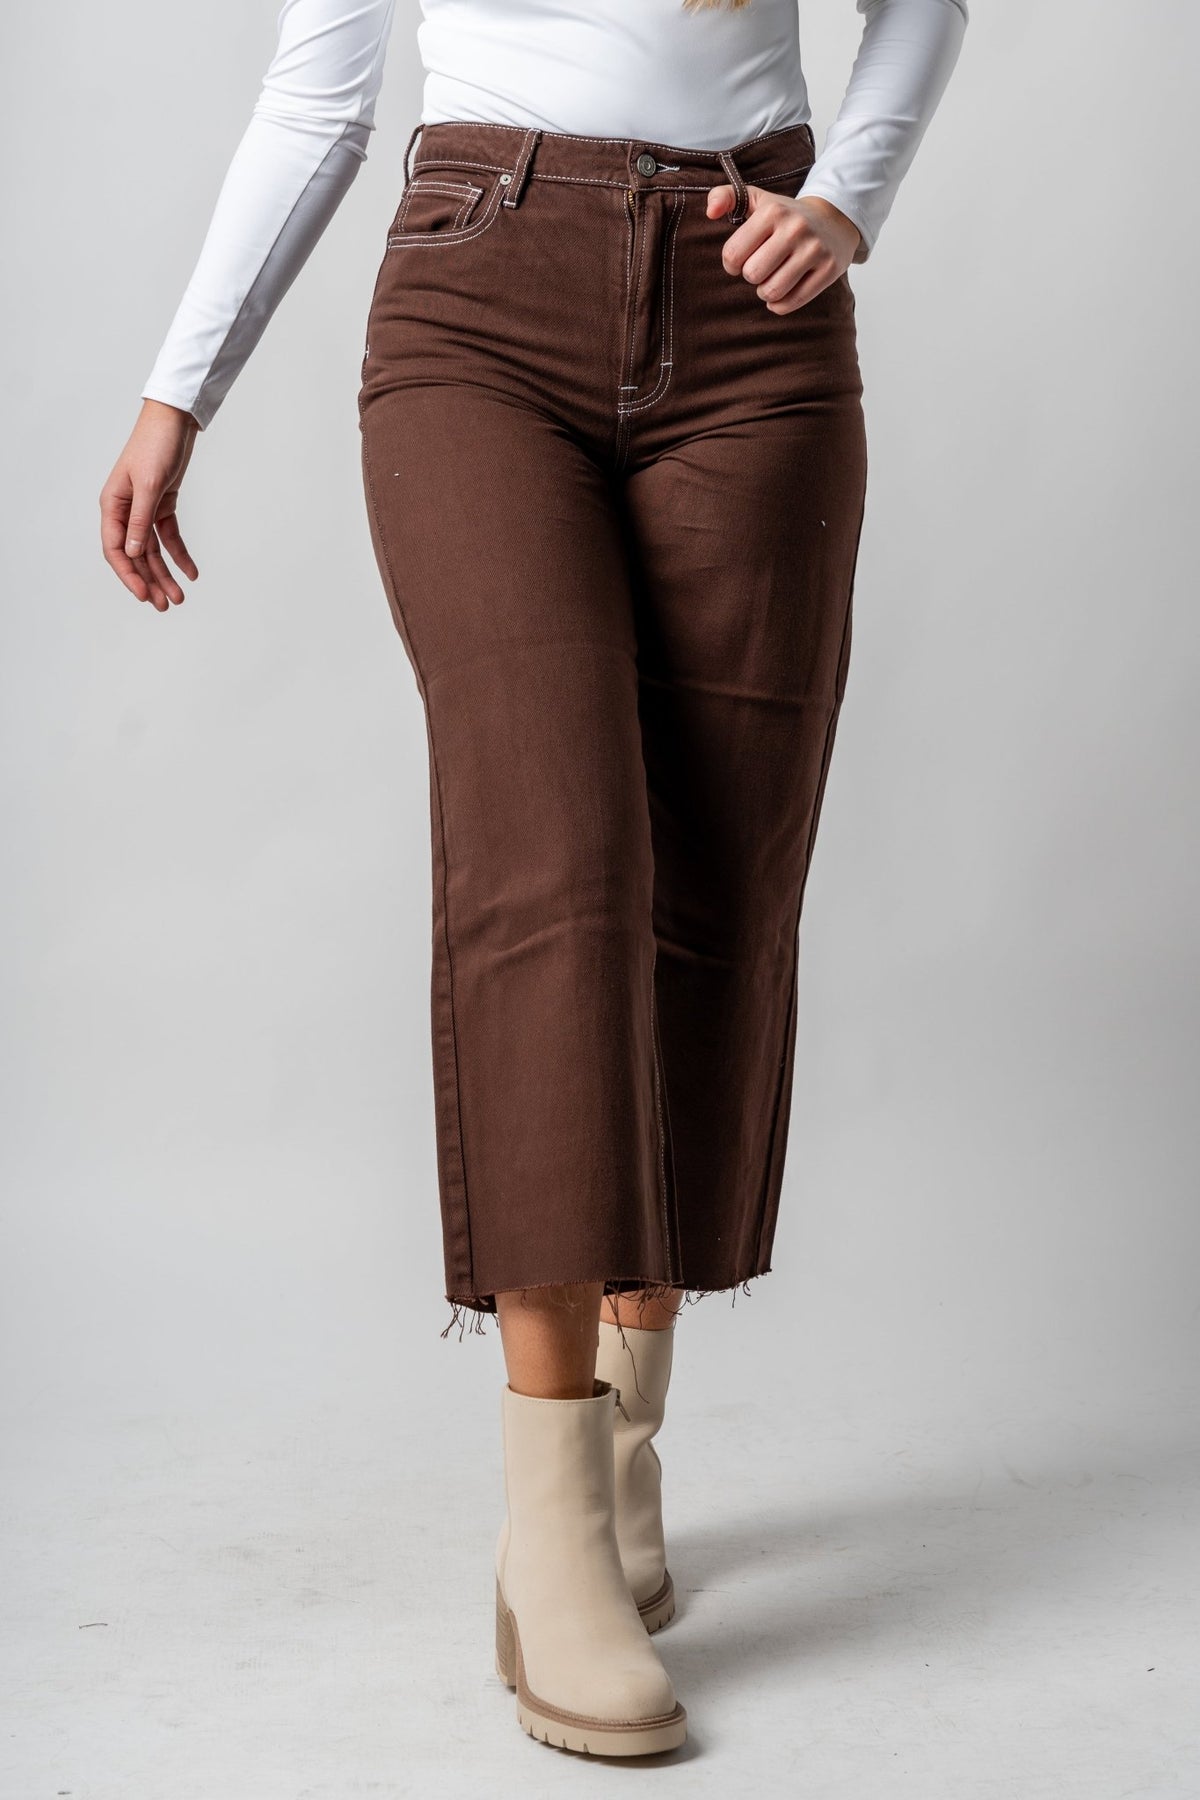 Hidden Nori high waist wide legs jeans chocolate | Lush Fashion Lounge: boutique women's jeans, fashion jeans for women, affordable fashion jeans, cute boutique jeans